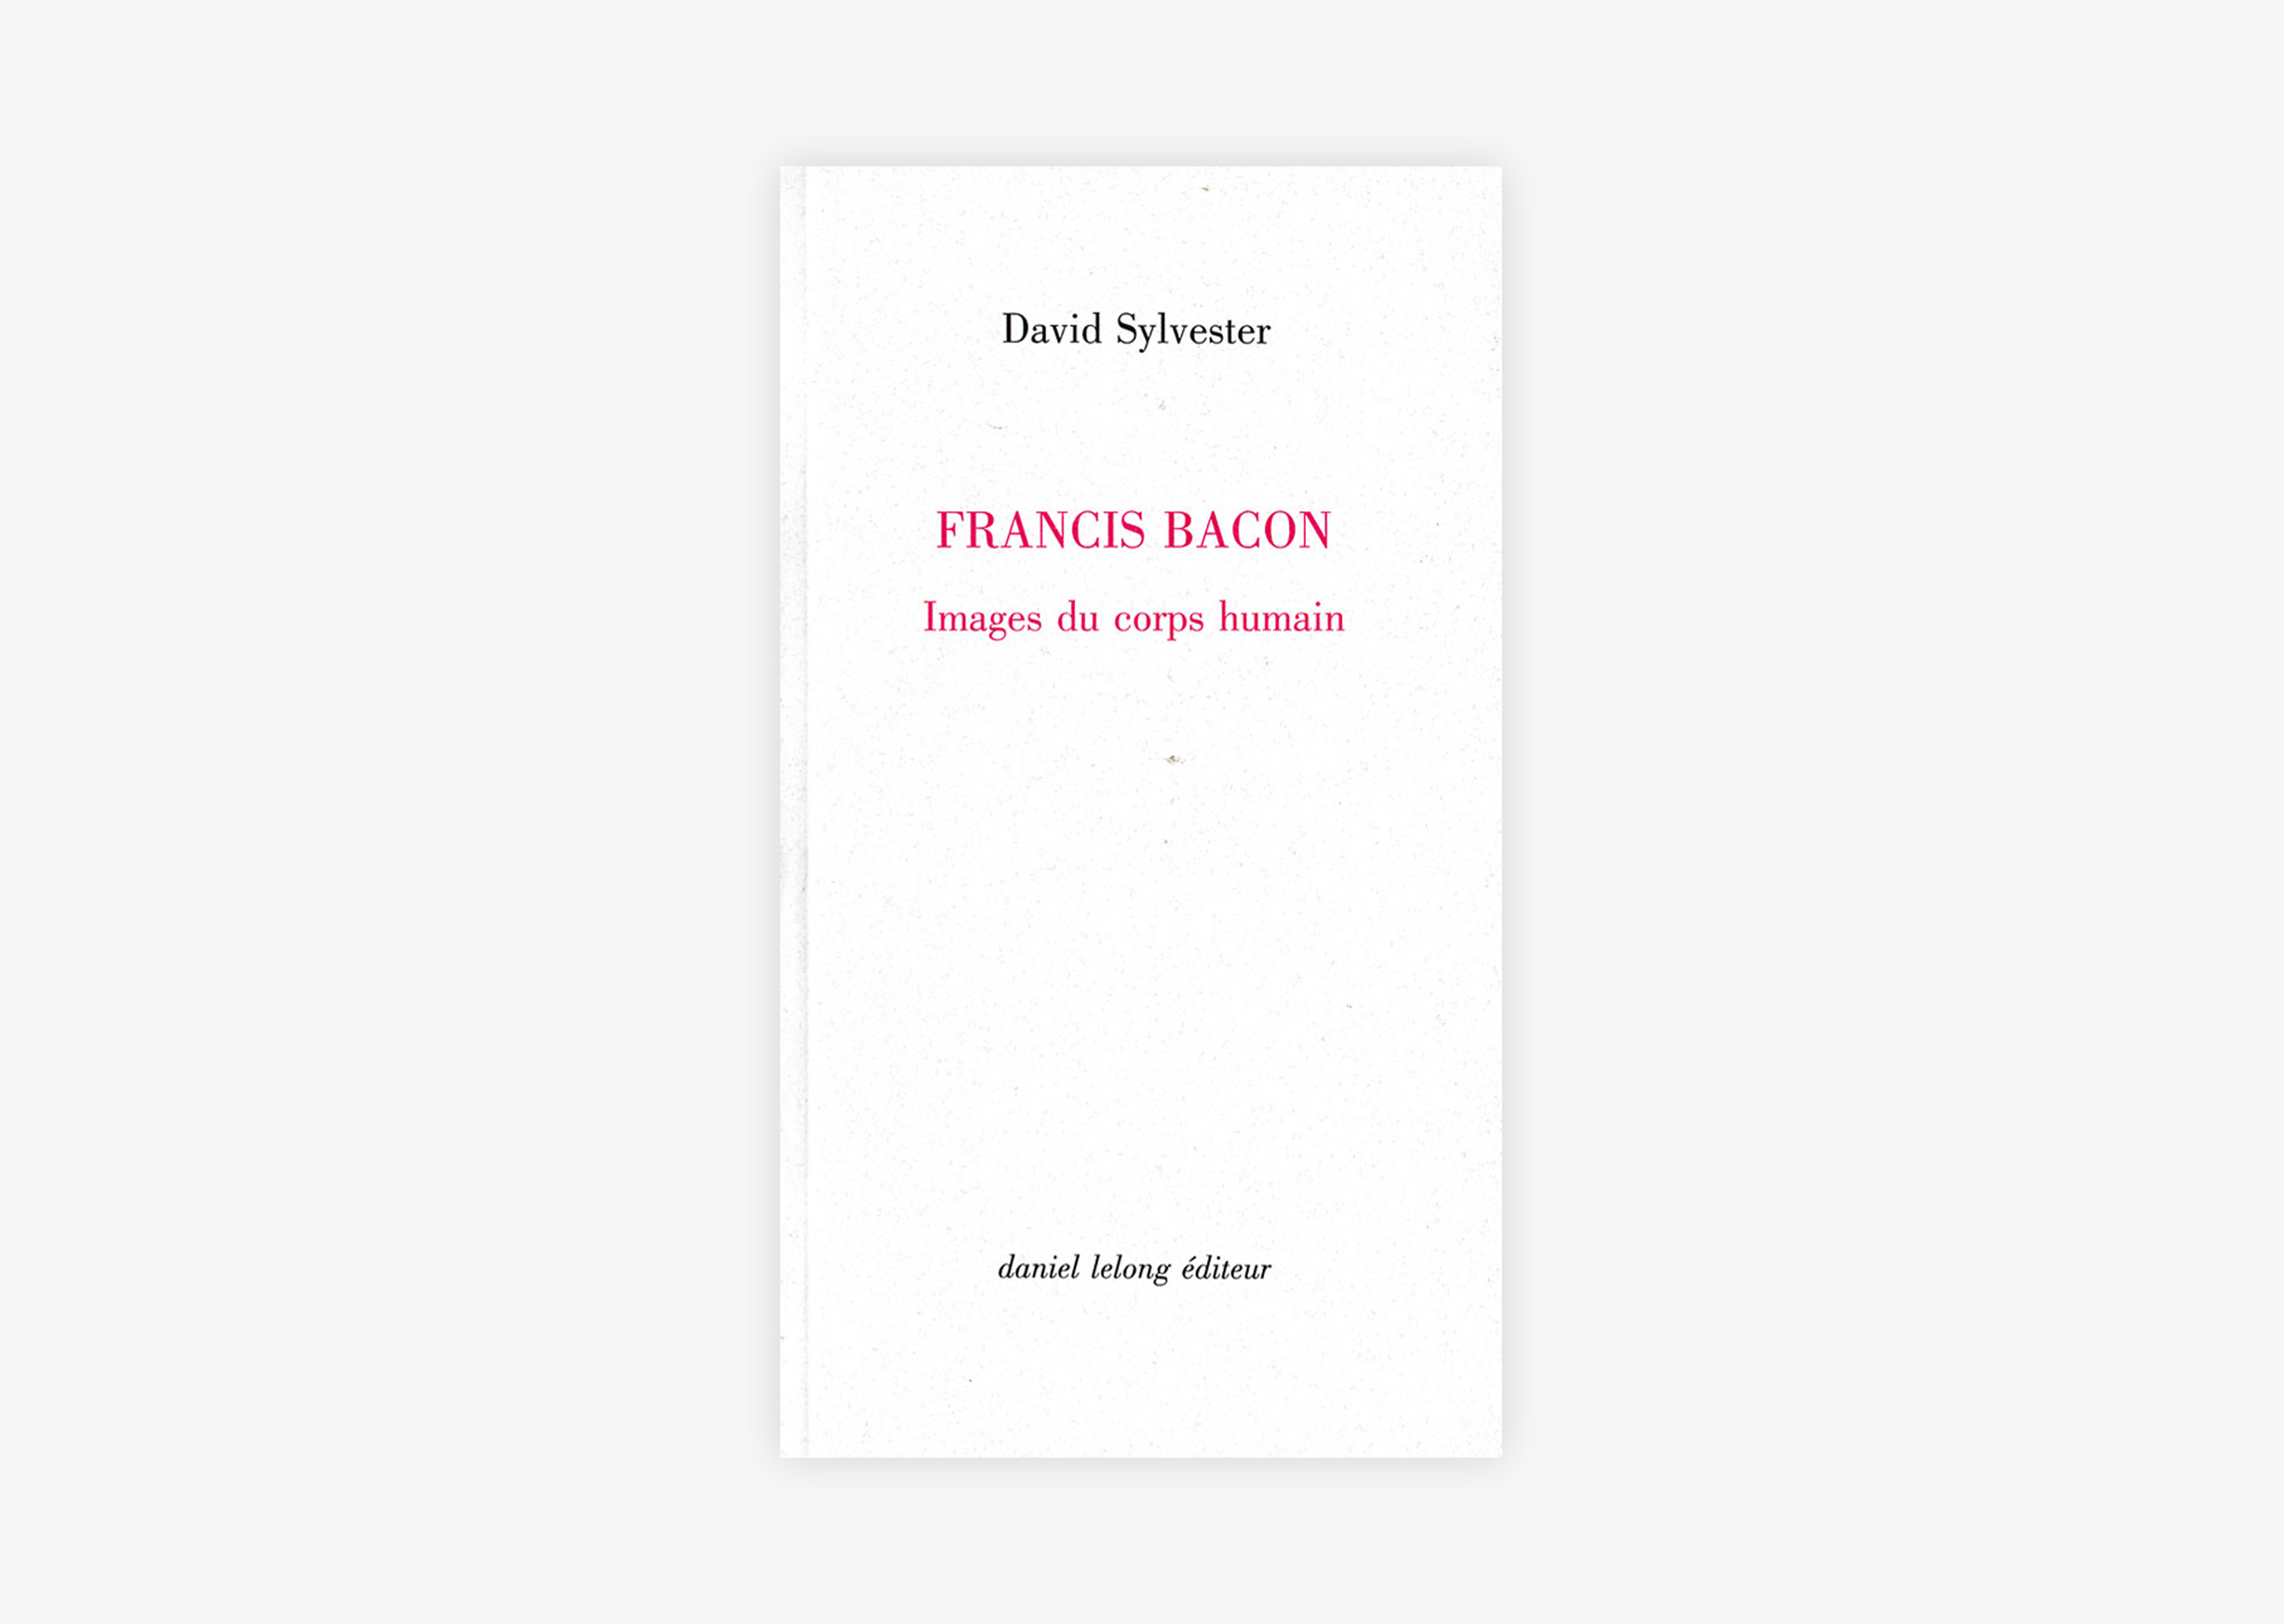 livre Images du corps humain Francis Bacon